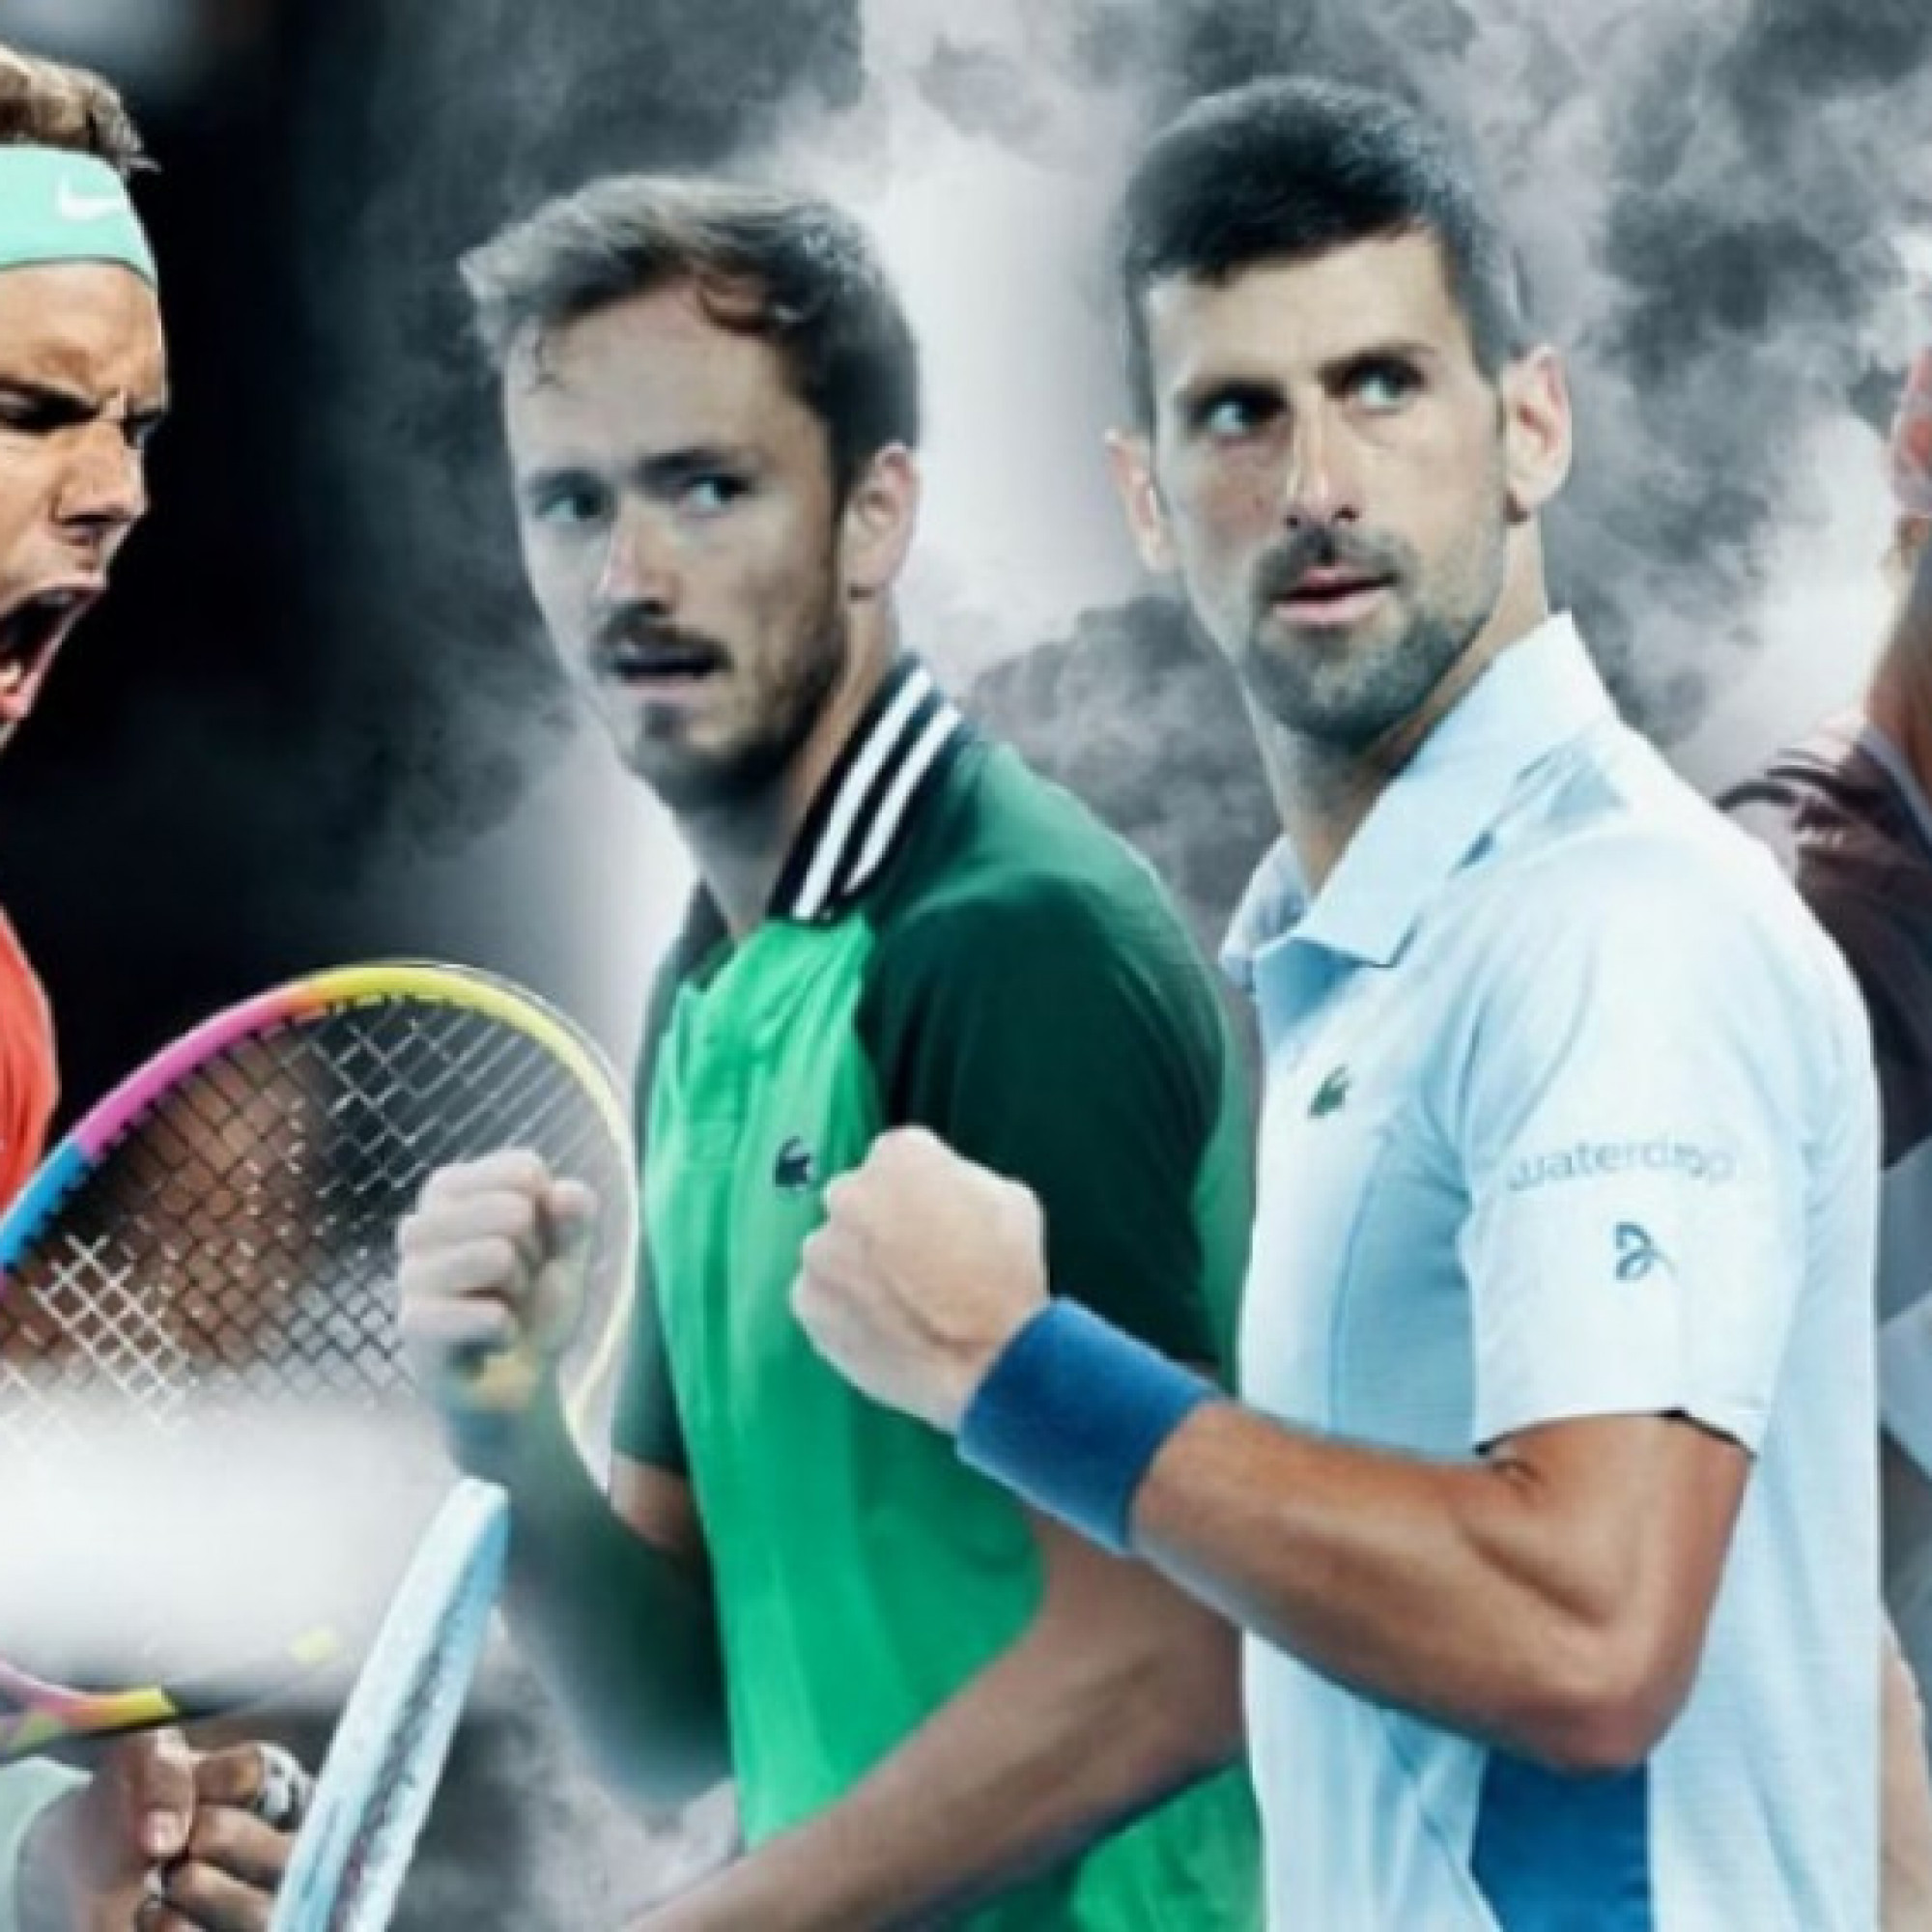 LỊCH THI ĐẤU LIVESCORE TENNIS HÔM NAY: Tâm điểm Madrid Open